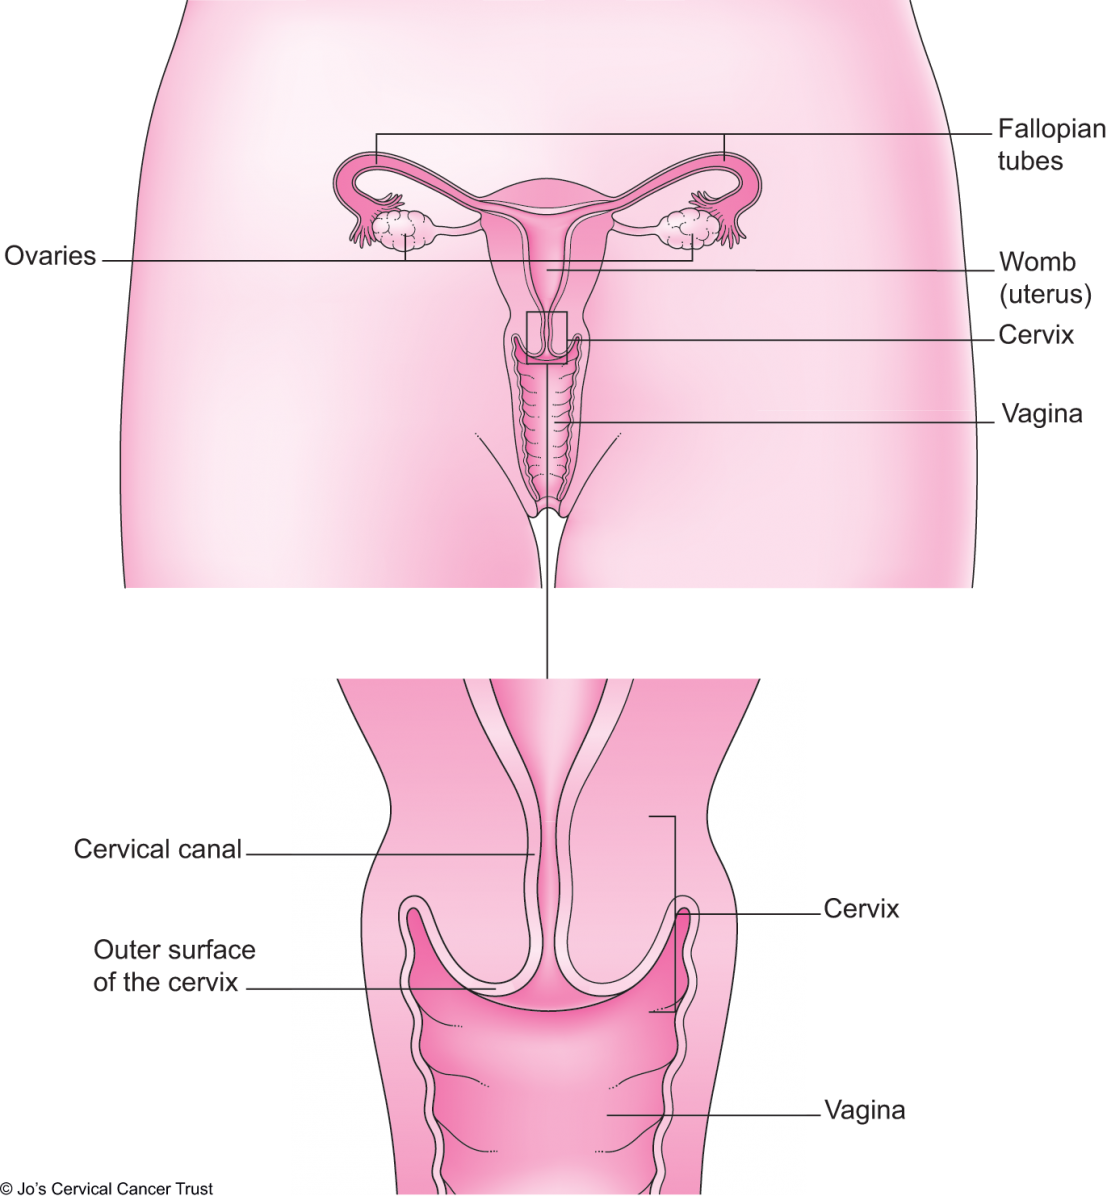  El cuello uterino que muestra la superficie exterior y el canal cervical